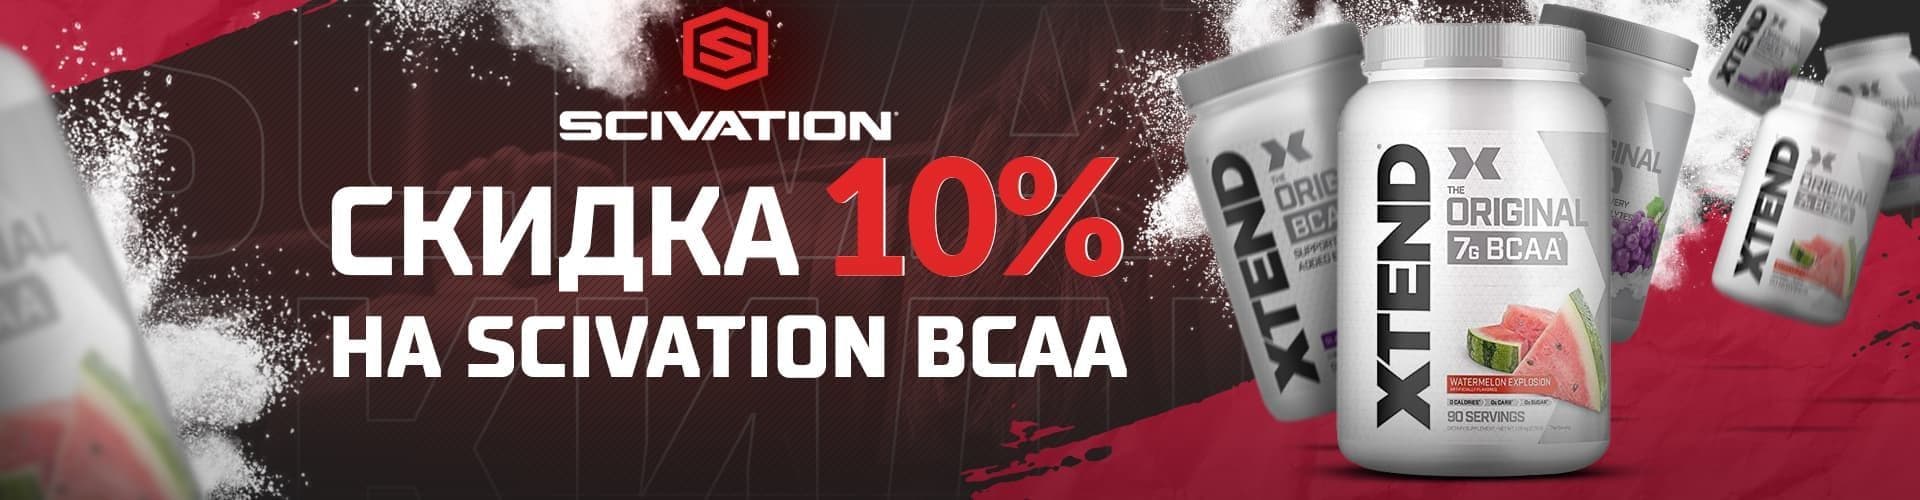 Scivation BCAA 10%